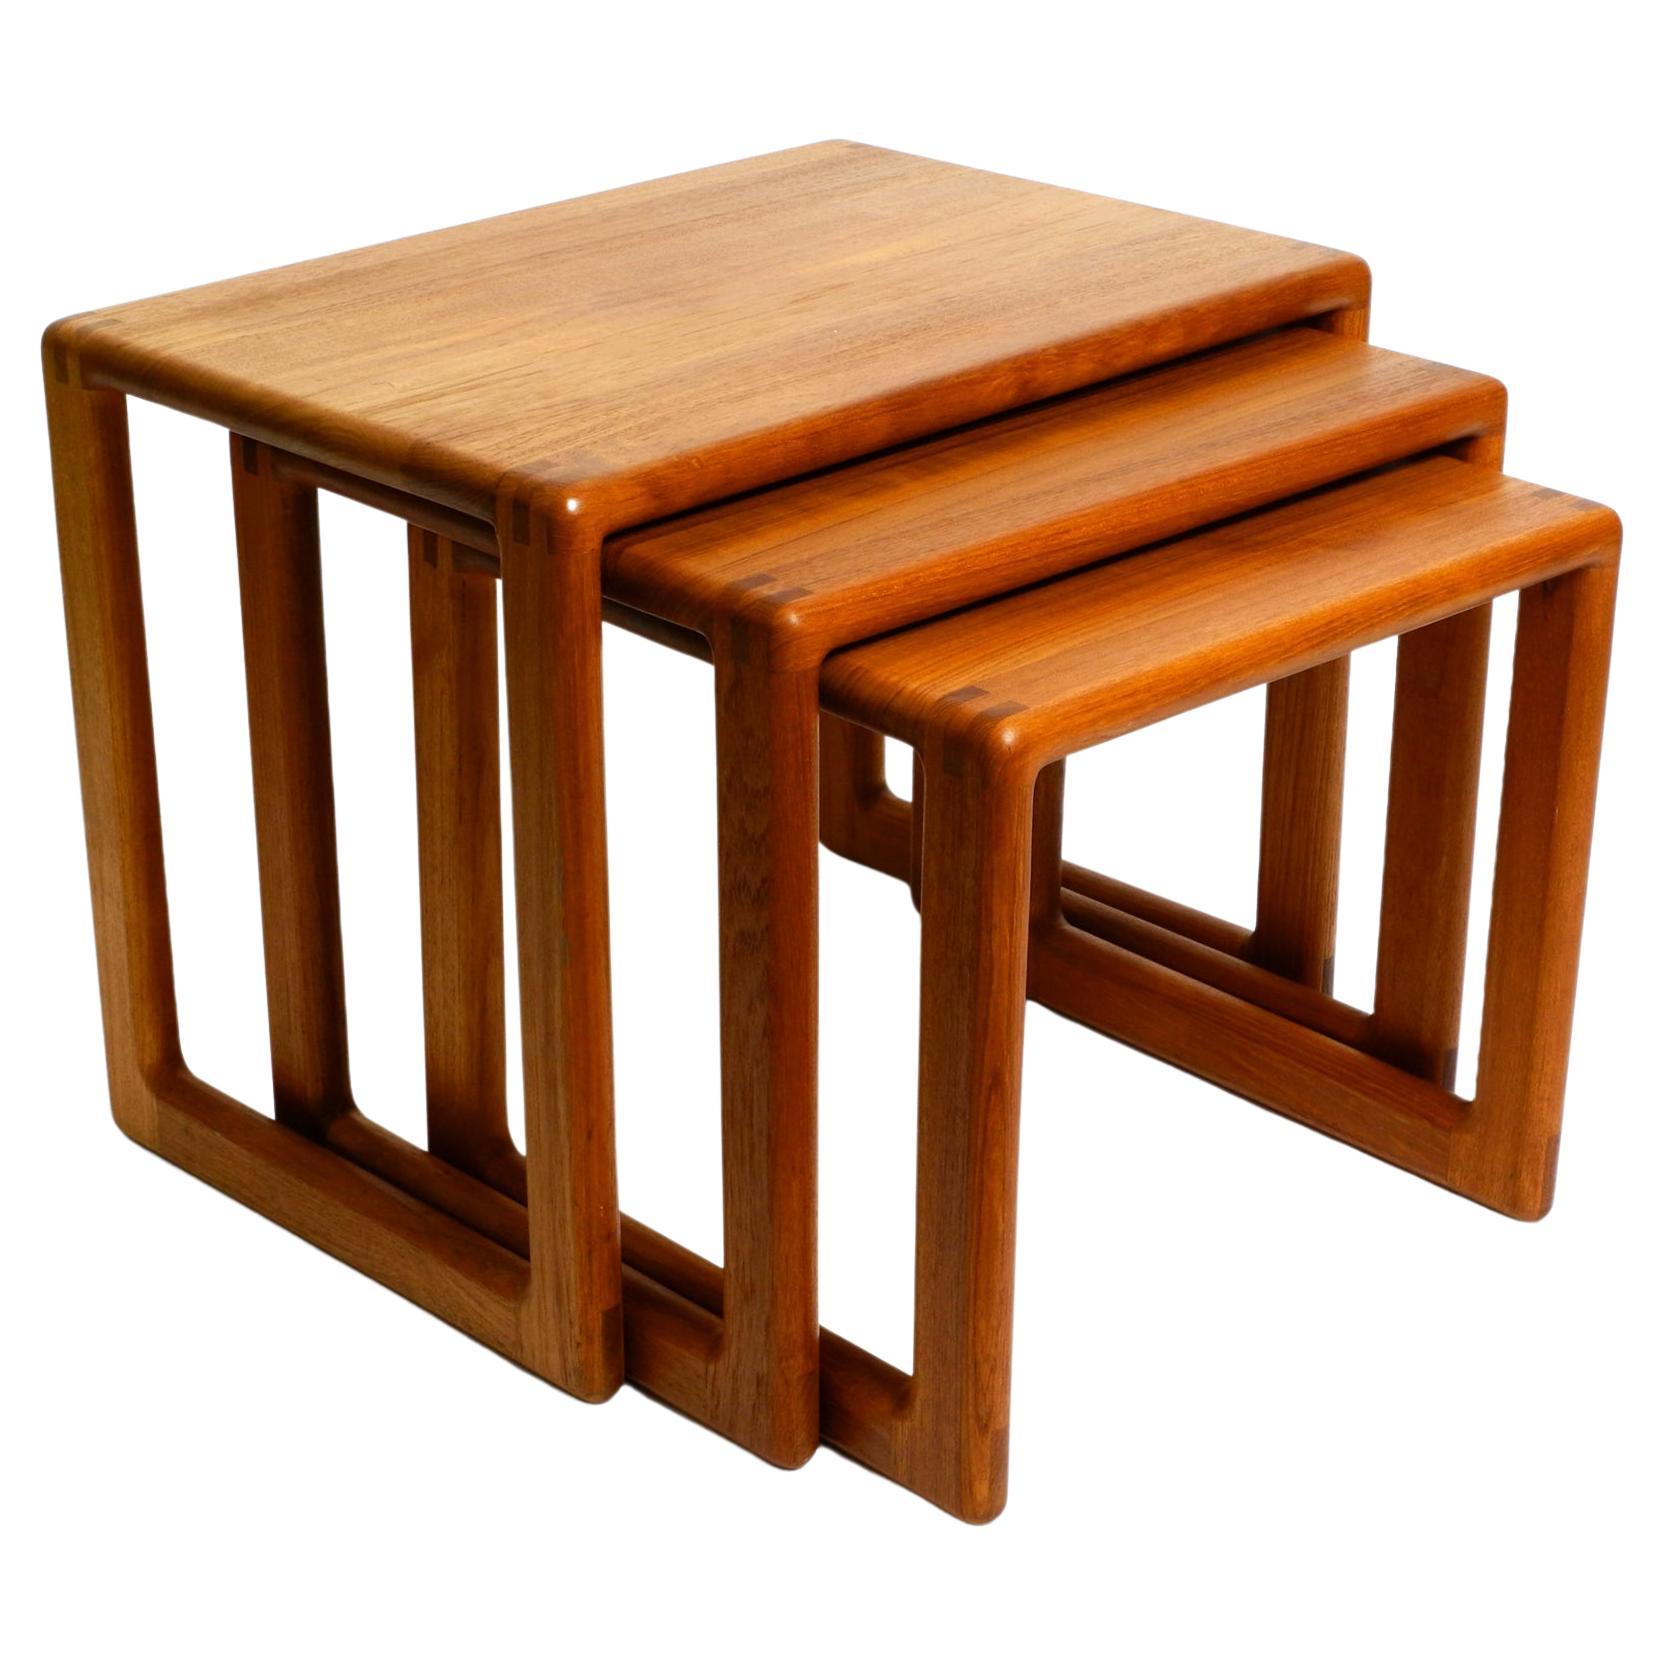 Beautiful solid Mid Century set of 3 teak wood nesting tables